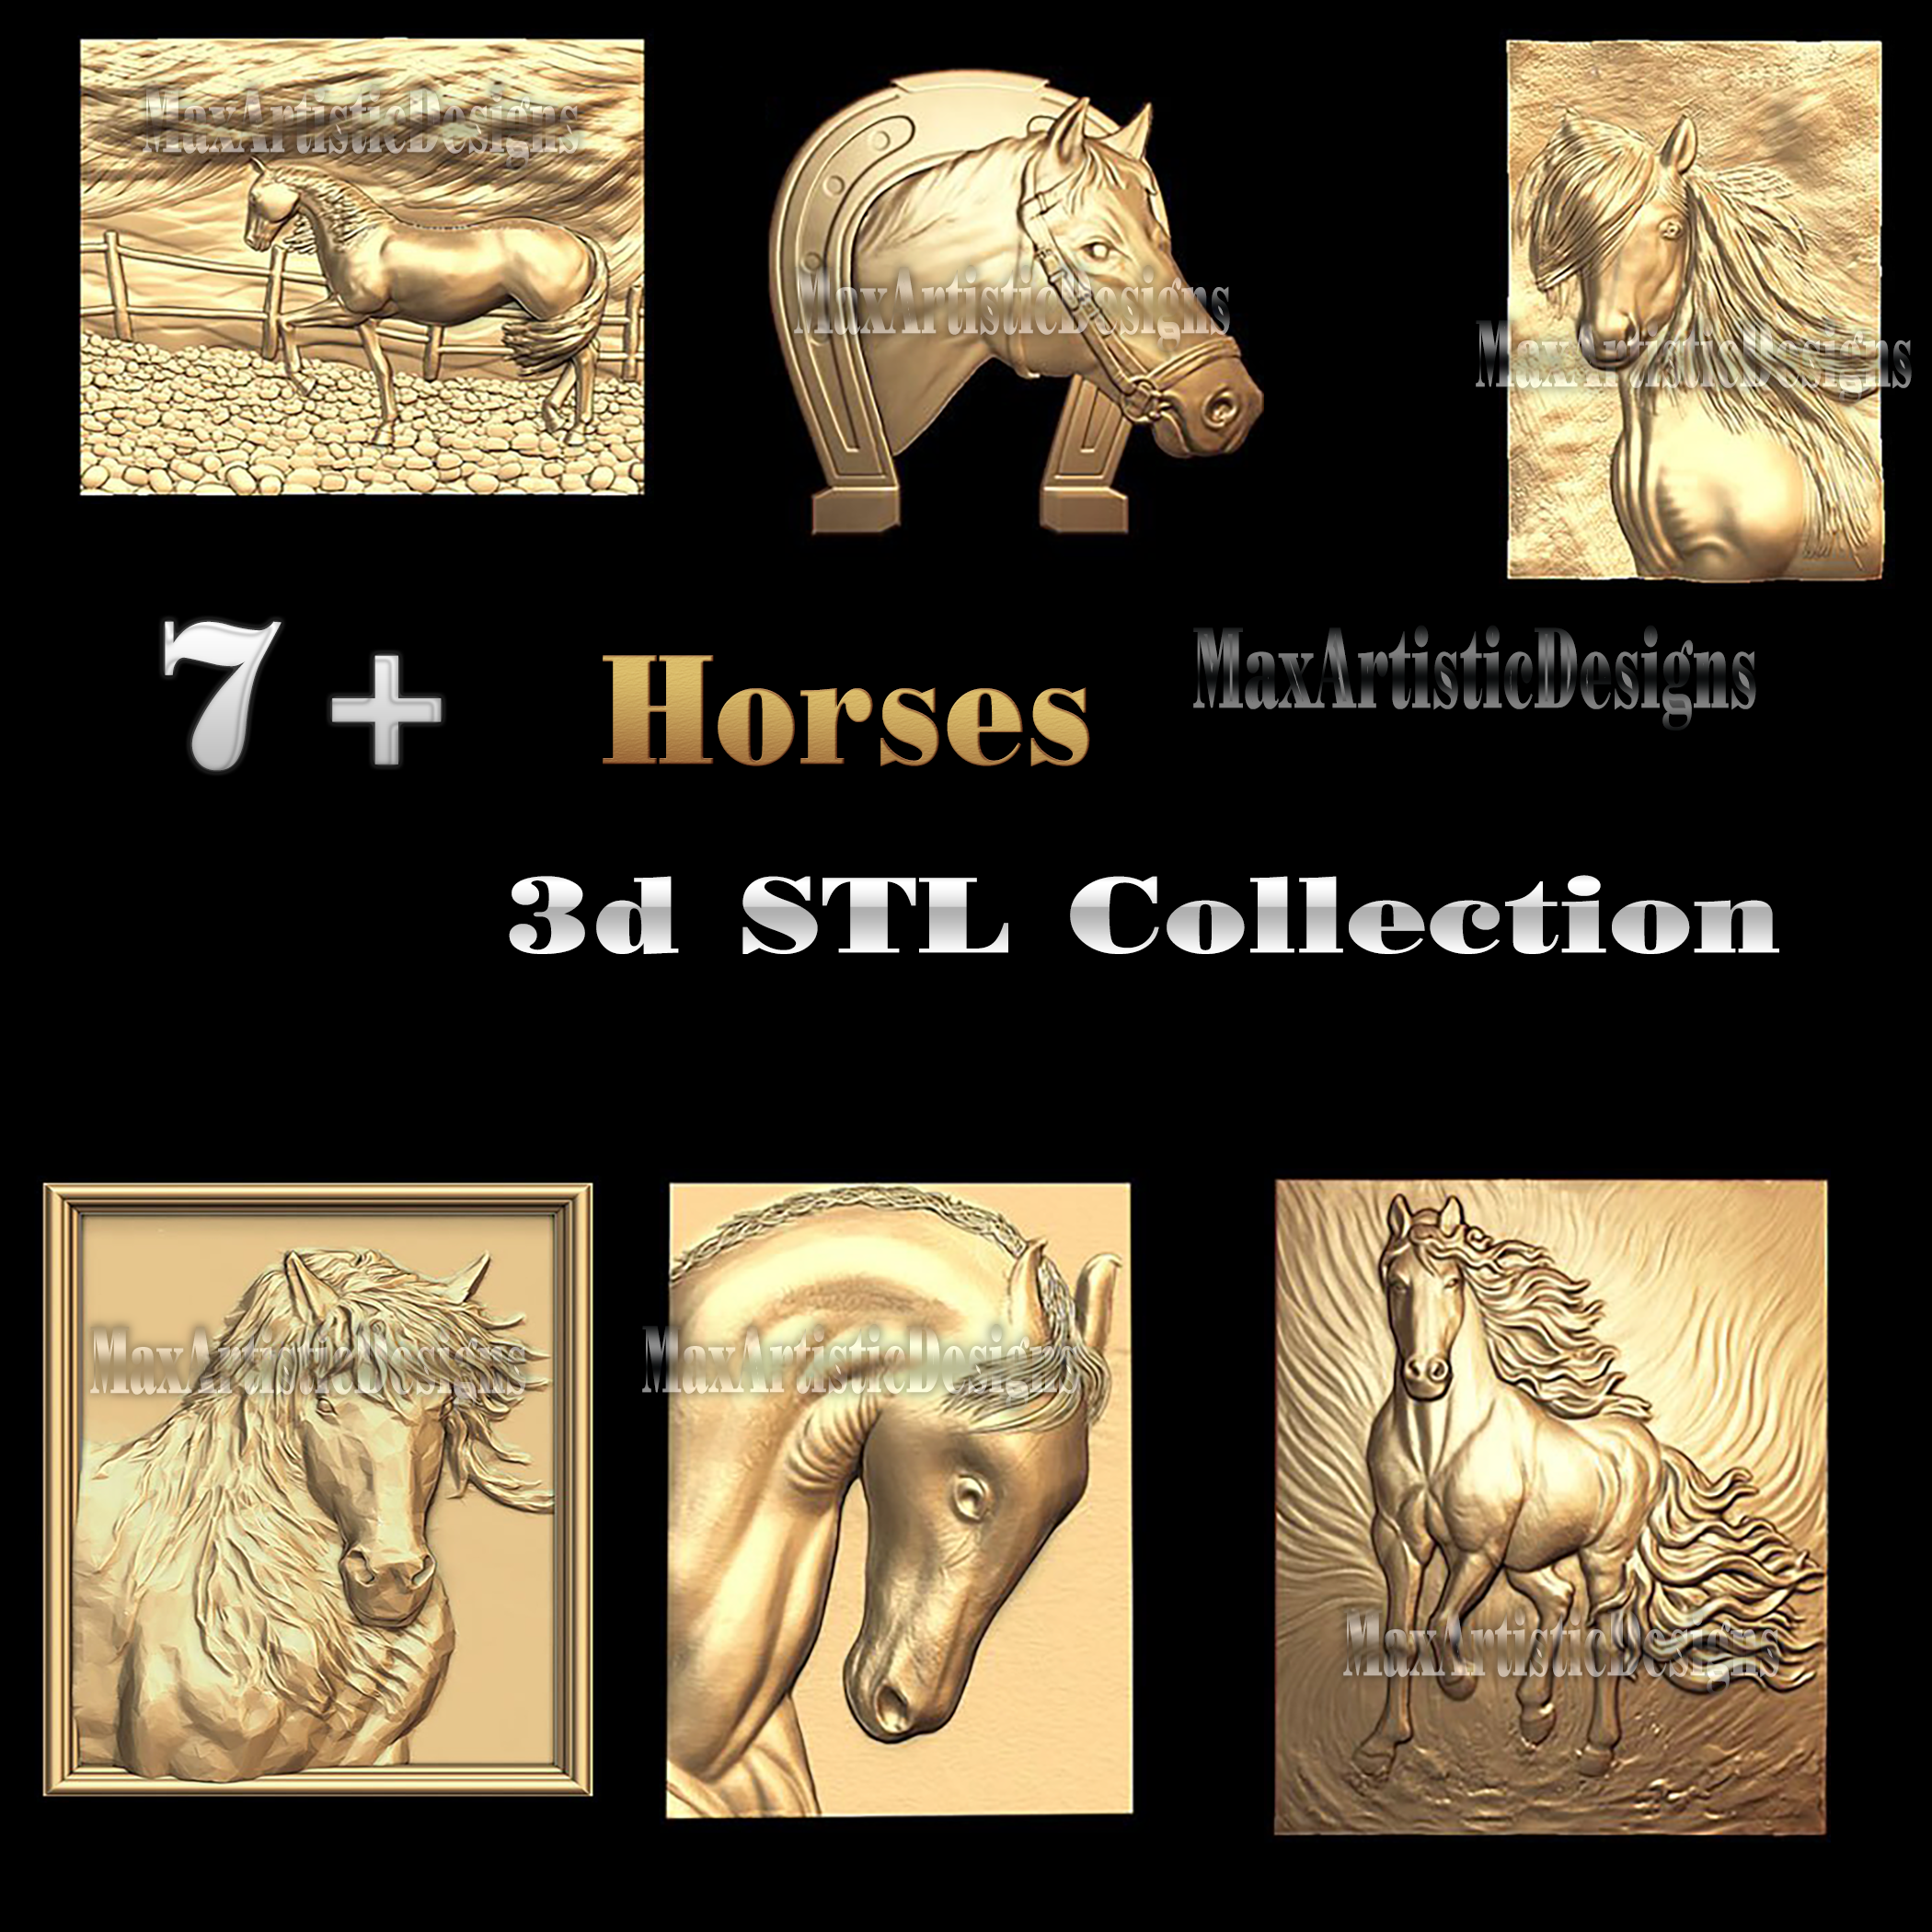 Más de 8 modelos de caballos stl bajorrelieve en madera Archivo stl 3d para enrutadores cnc Impresora 3d artcam aspire descarga digital